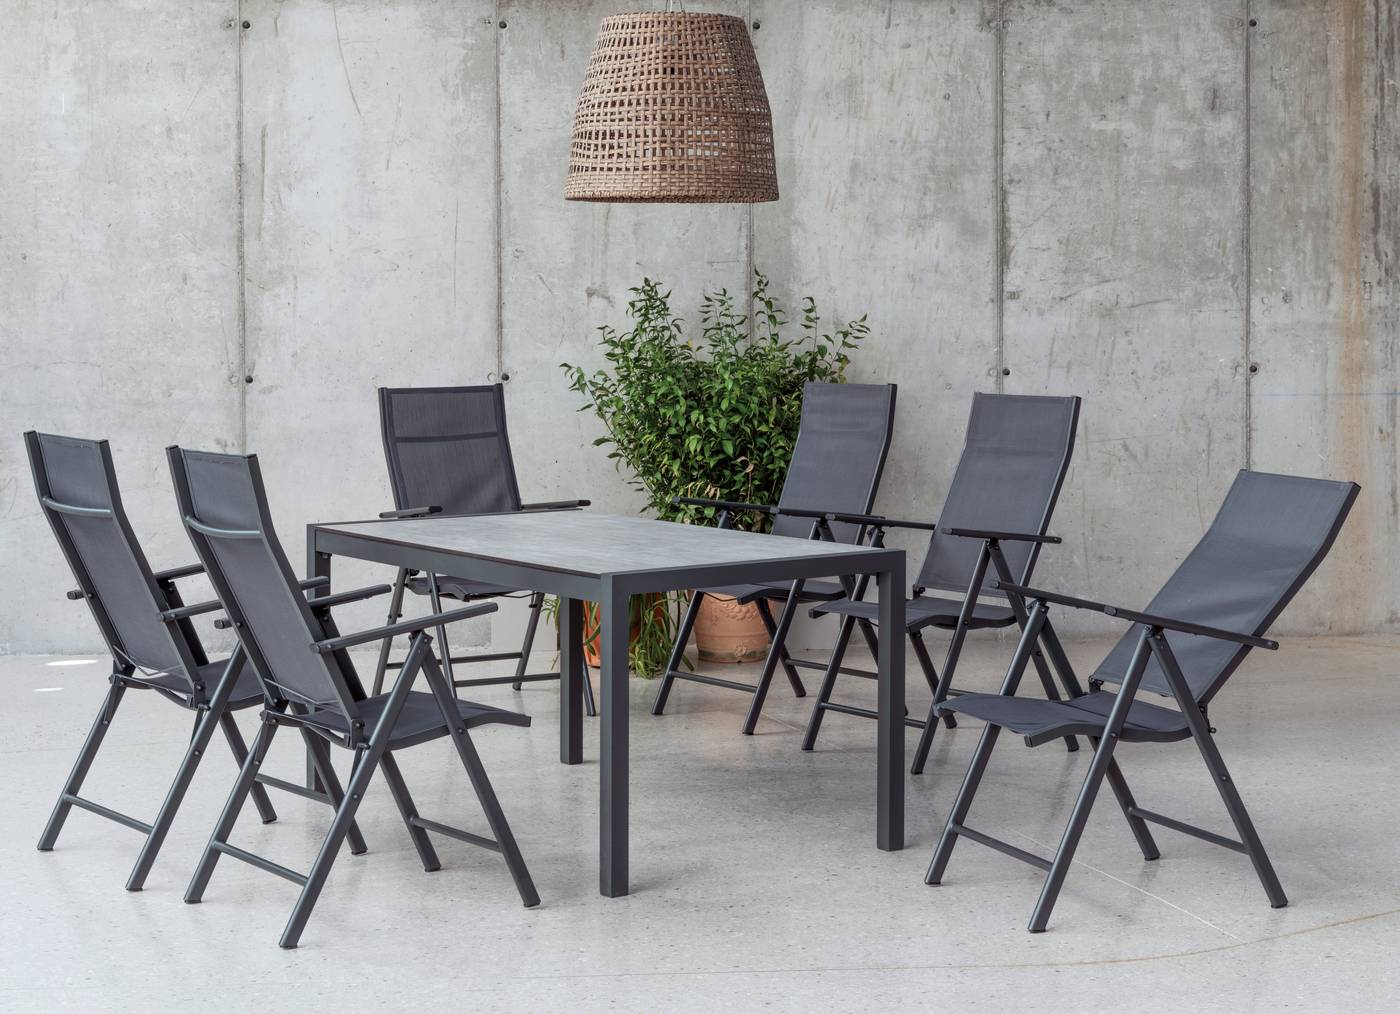 Conjunto de aluminio para jardín: Mesa rectangular con tablero HPL de 160 cm + 4 tumbonas con asiento y respaldo textilen. Colores: blanco y antracita.